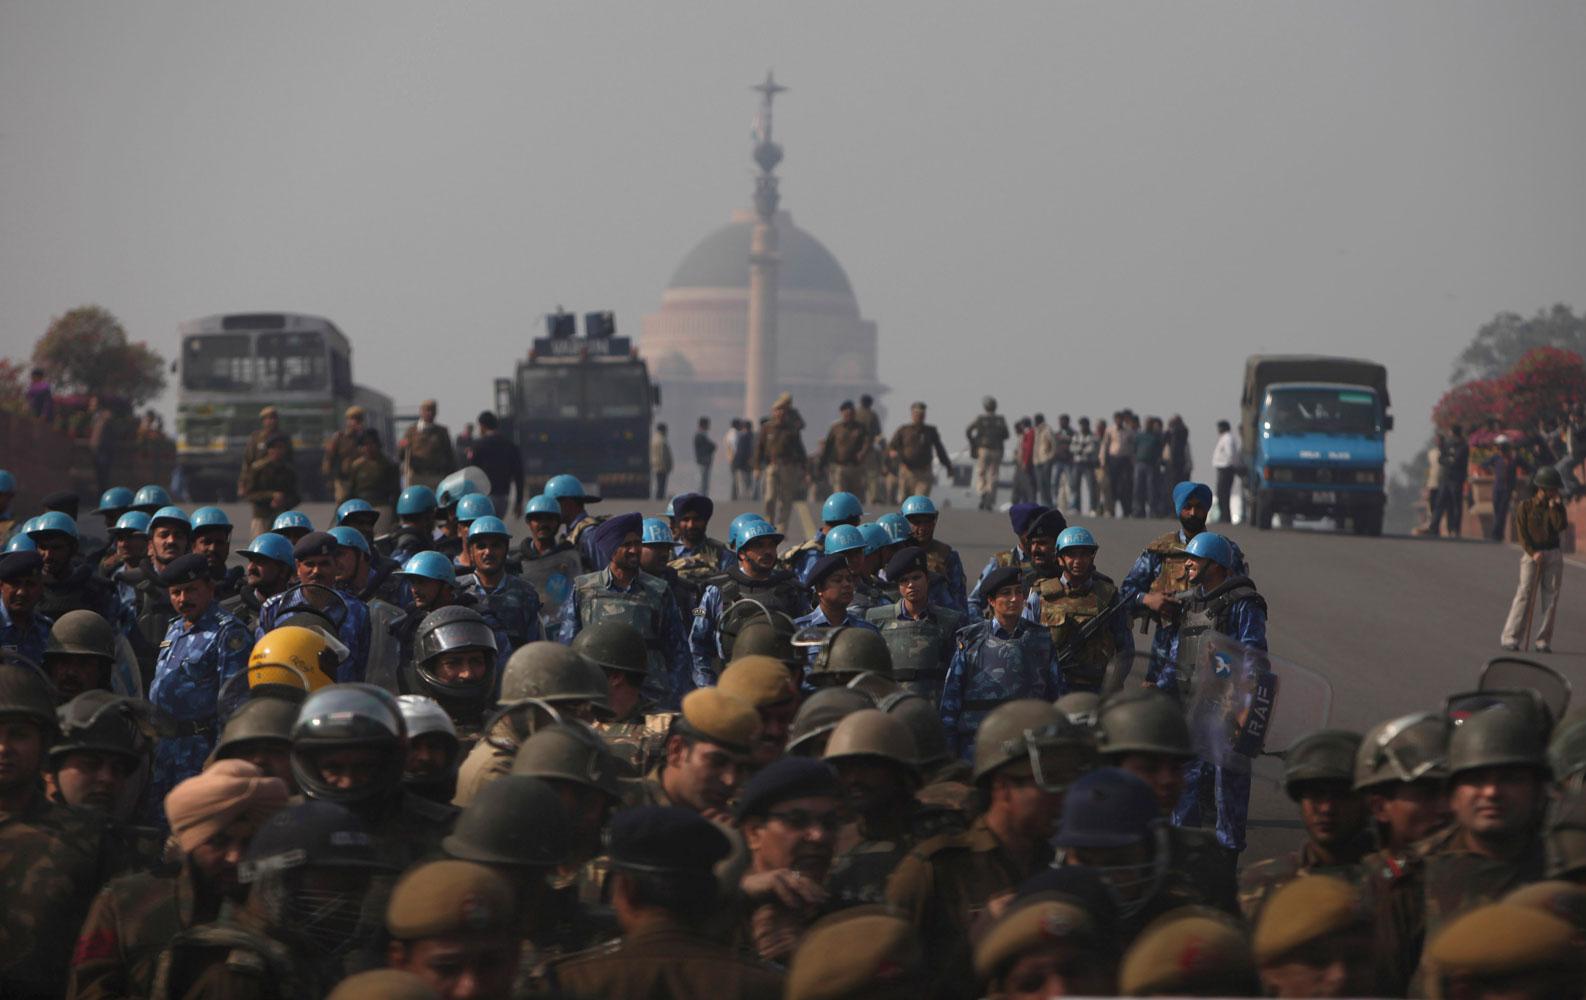 Indisk kravallpolis i Delhi under de oroligheter som följde efter den brutala gruppvåldtäkten.